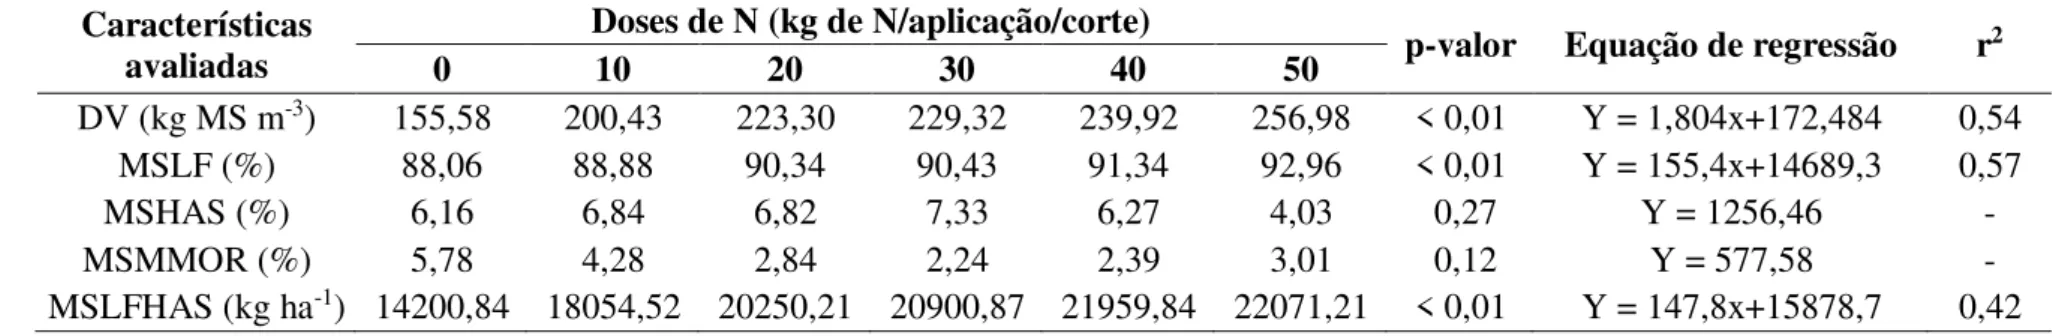 Tabela 3 - Densidade volumétrica da forragem (DV), Percentual de massa seca de lâmina foliar (MSLF), Percentual de massa seca de haste  (MSHAS),  Percentual  de  massa  seca  de  material  morto  (MSMMOR)  e  Soma  de  massa  seca  de  lâmina  foliar  e  m